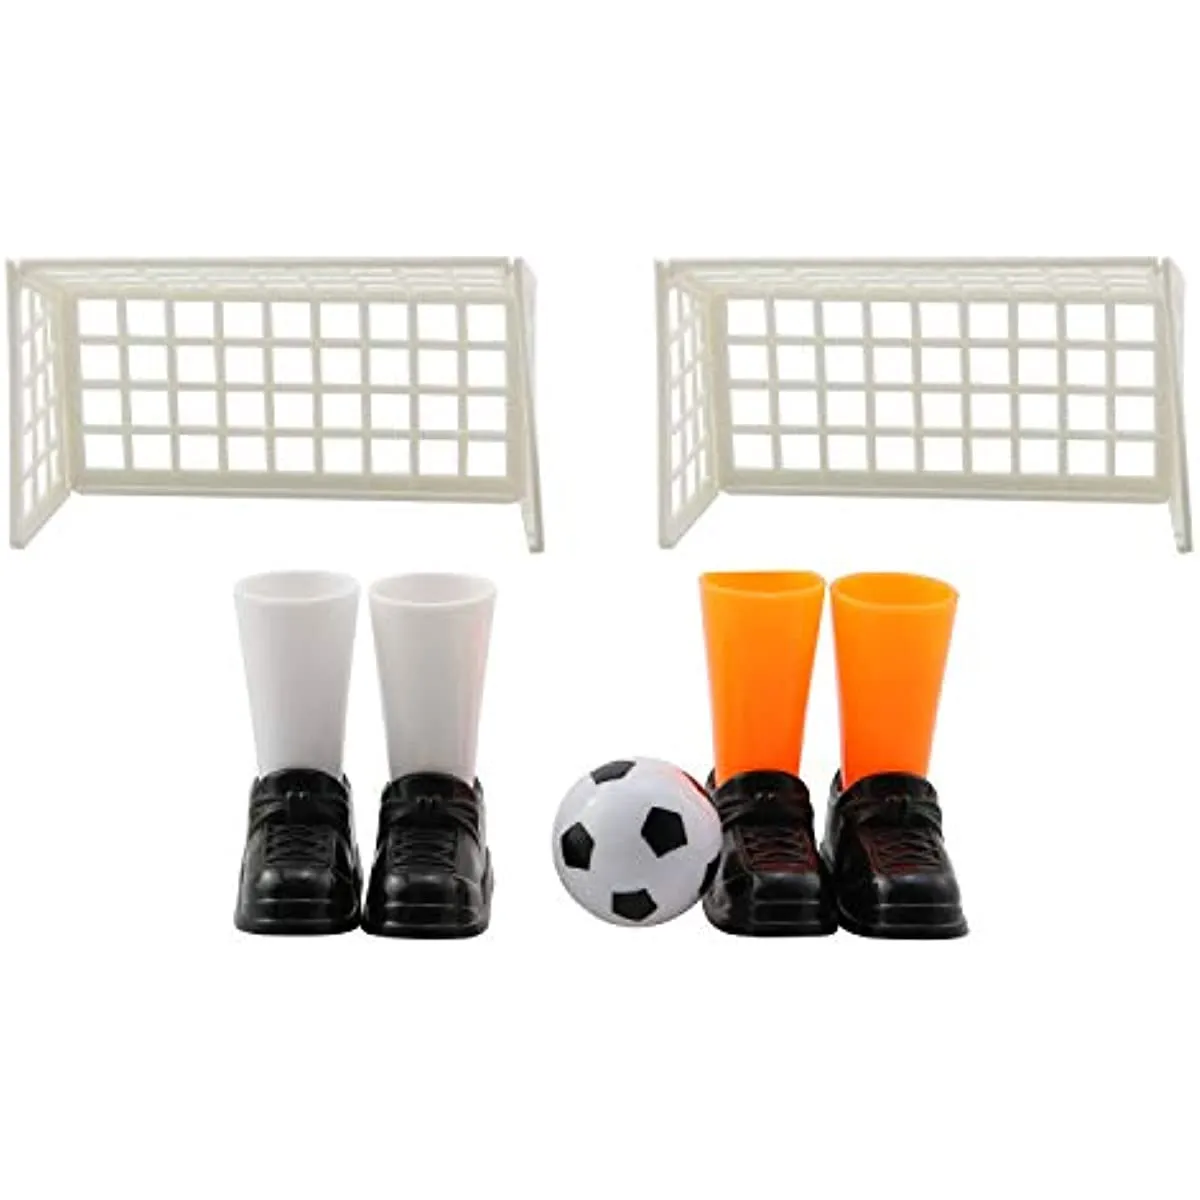 Finger Soccer Toys Football Match Board Board Games gust da tavolo divertente con due gol giocattolo